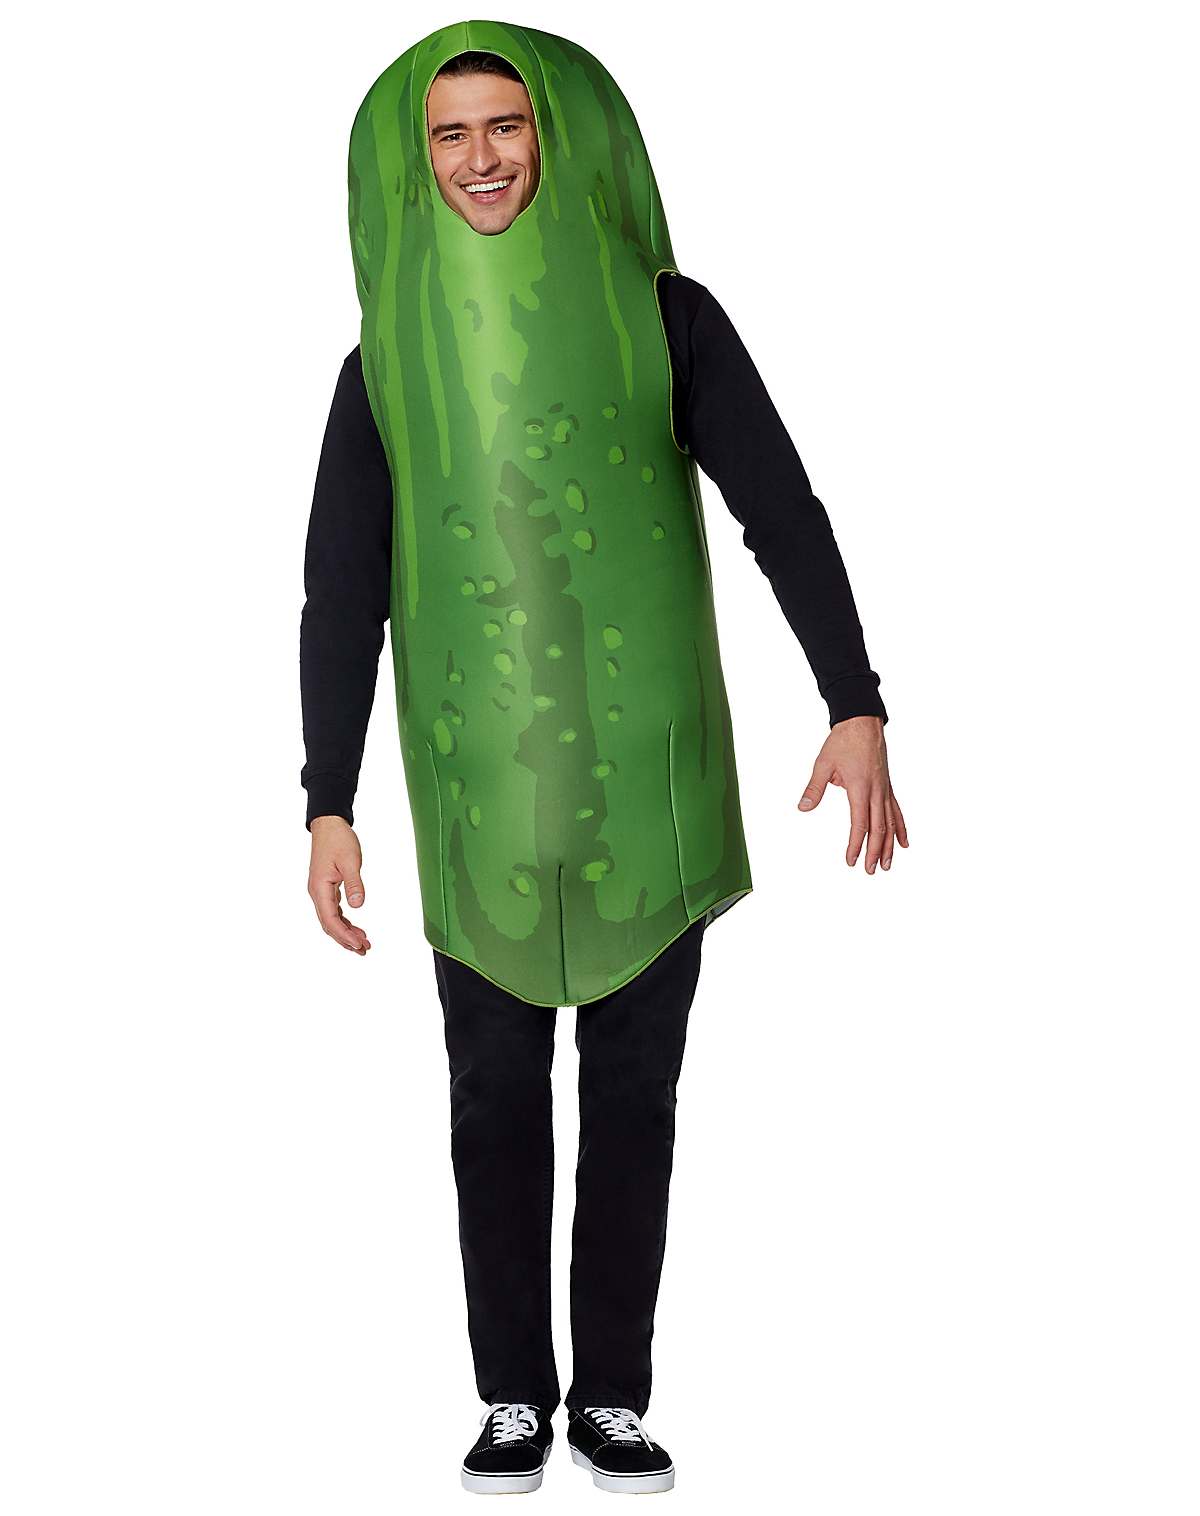 Adult pickle costume